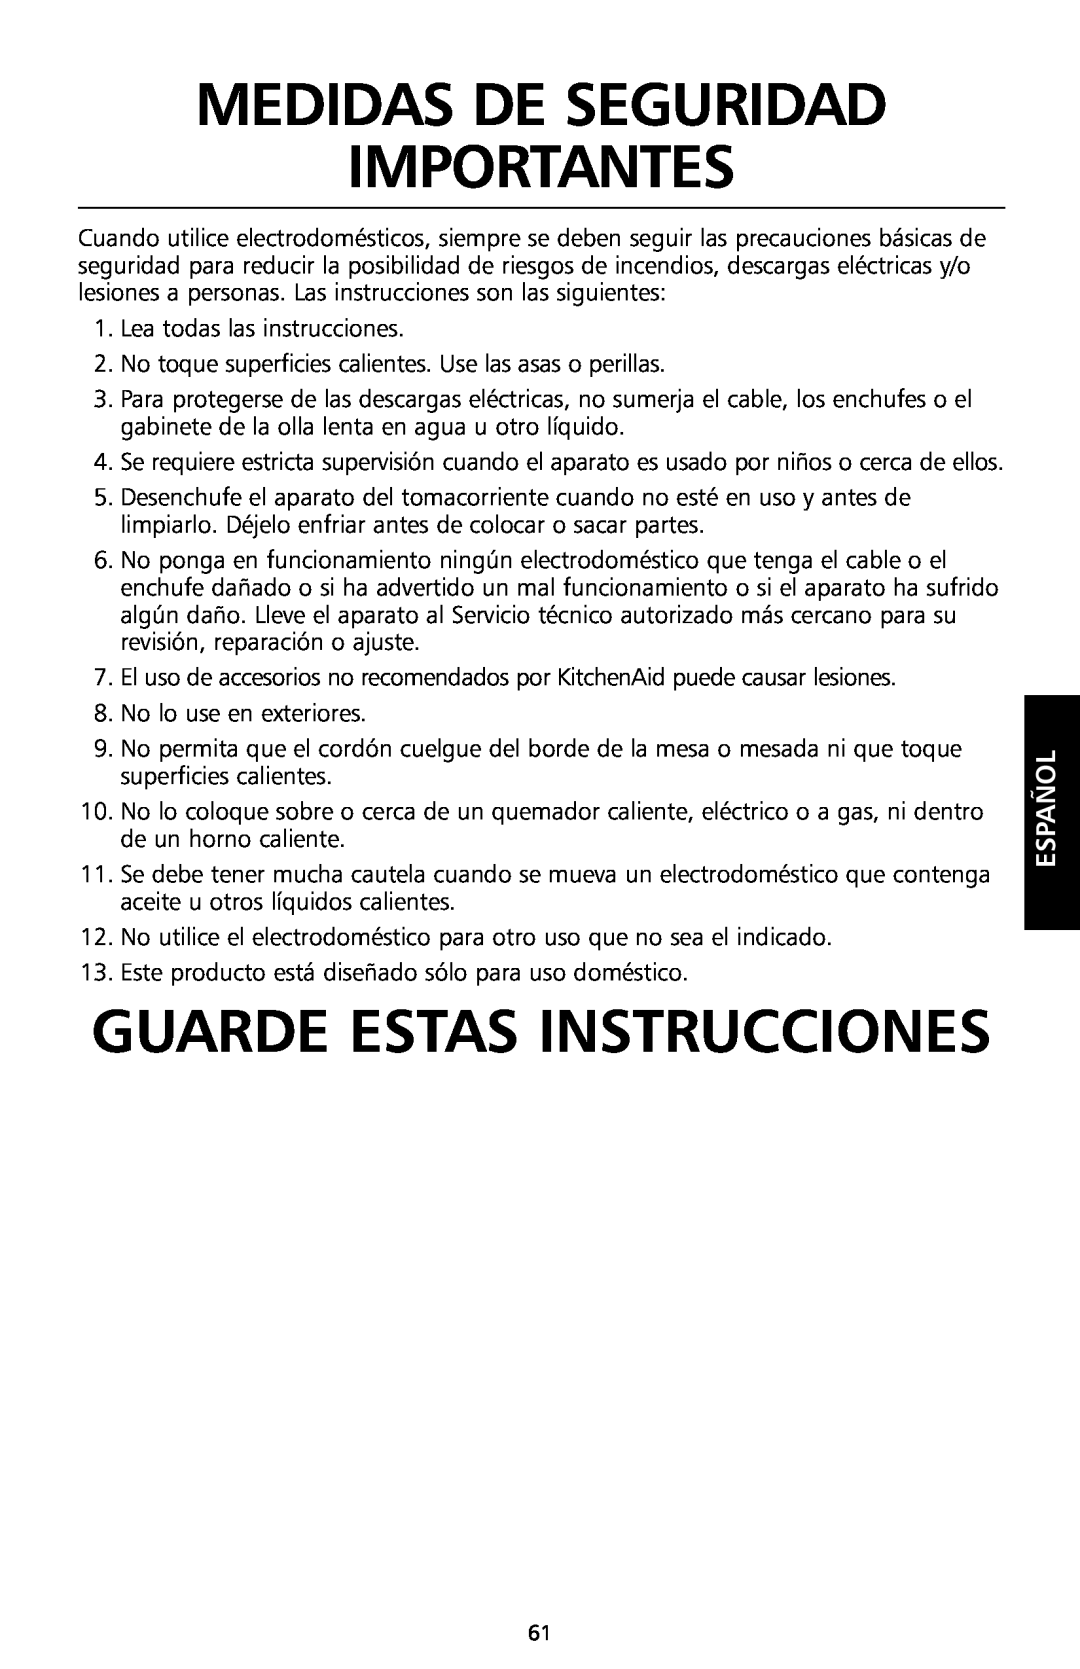 KitchenAid KSC700 manual Medidas De Seguridad Importantes, Guarde Estas Instrucciones, Español 